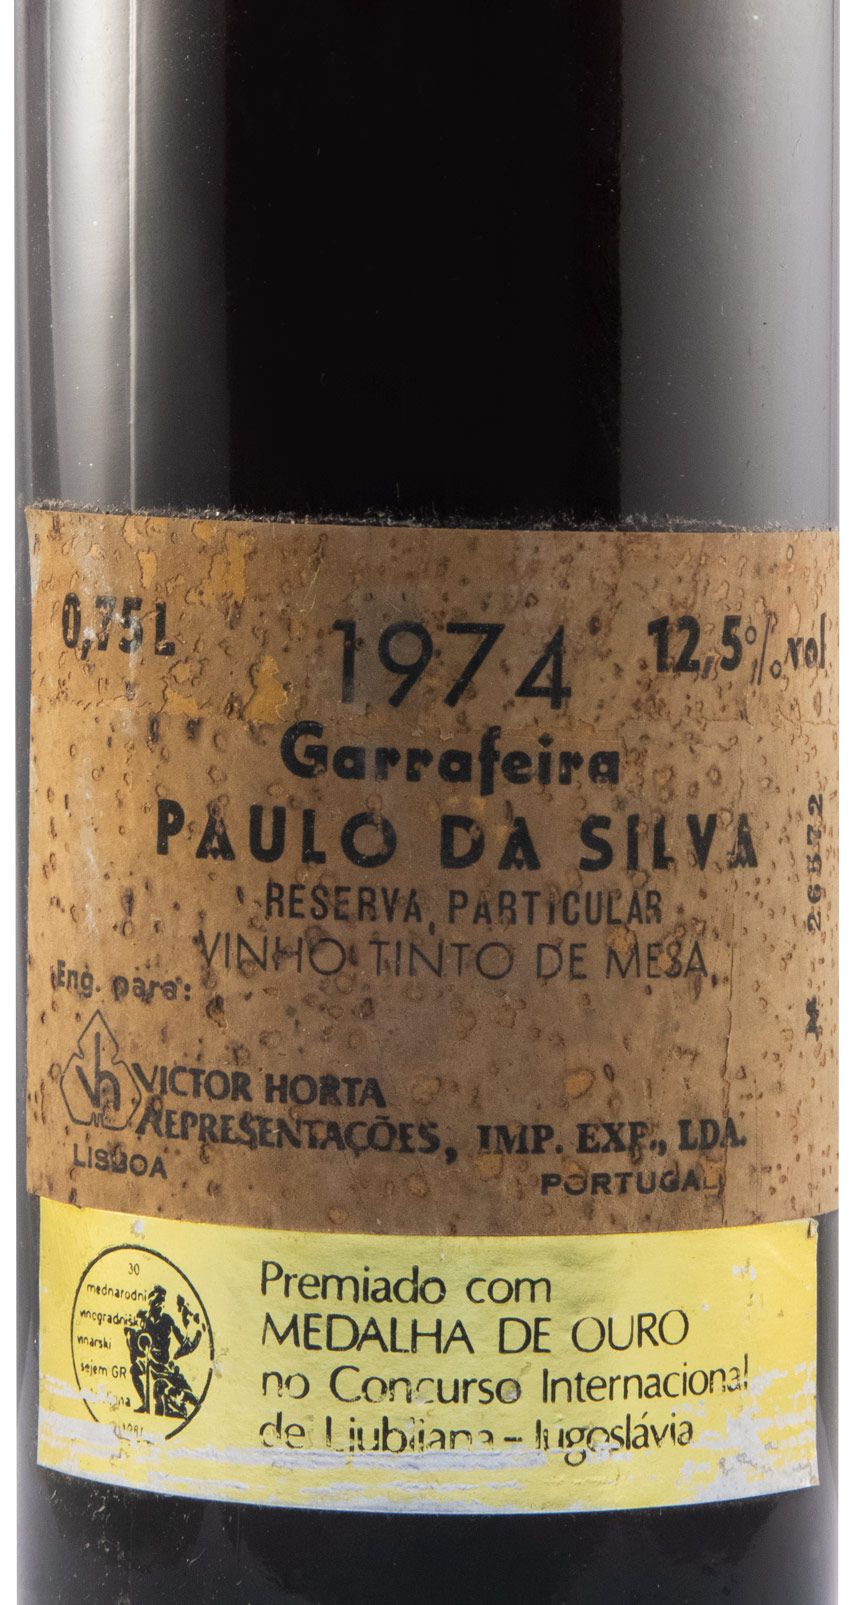 1974 Paulo da Silva Garrafeira Reserva Particular tinto